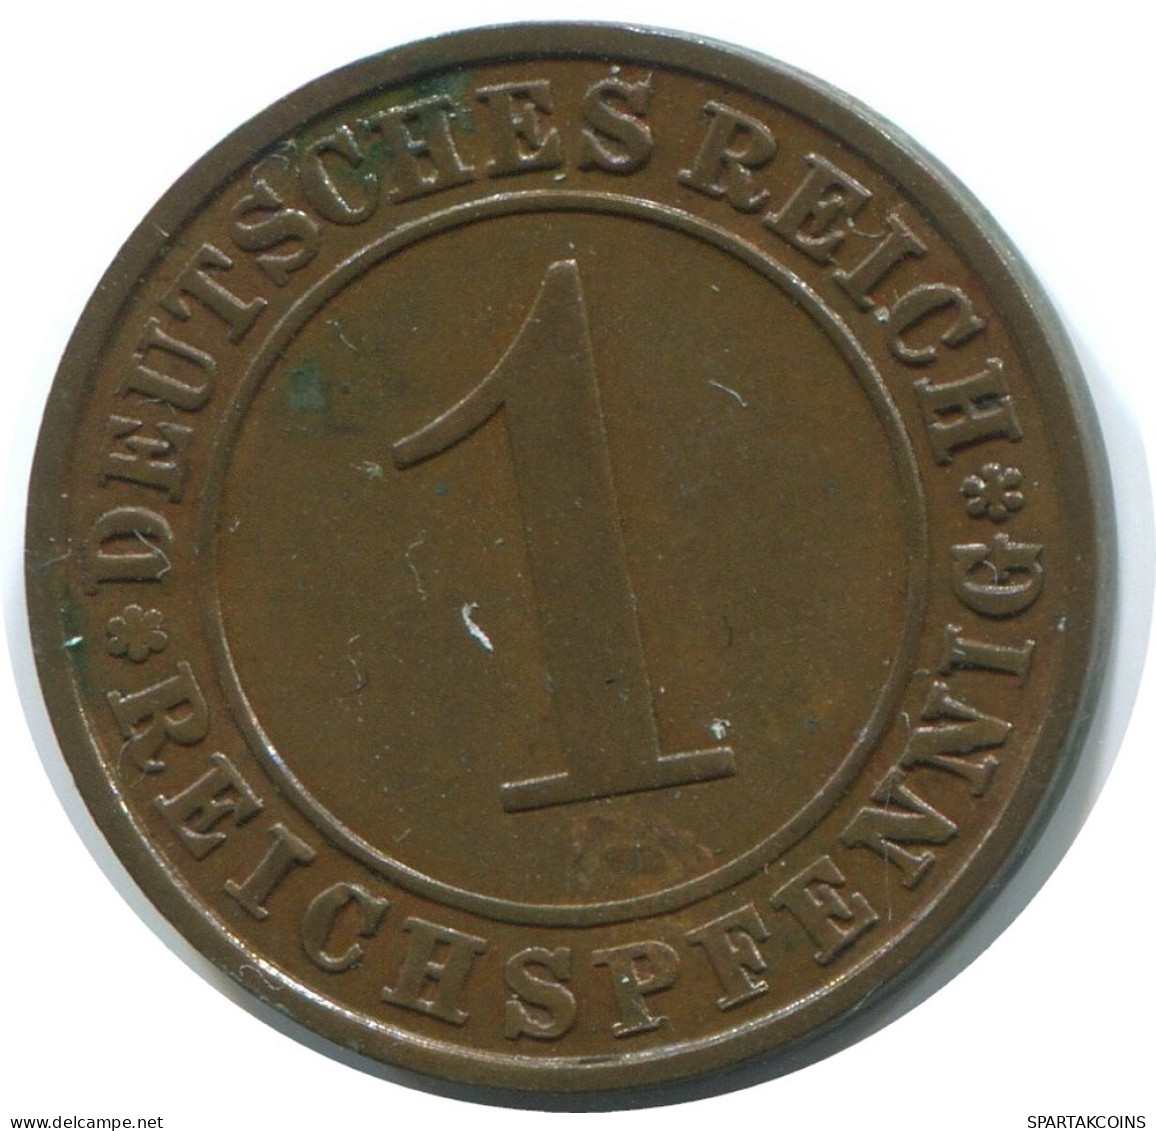 1 REICHSPFENNIG 1927 A DEUTSCHLAND Münze GERMANY #AE198.D - 1 Rentenpfennig & 1 Reichspfennig